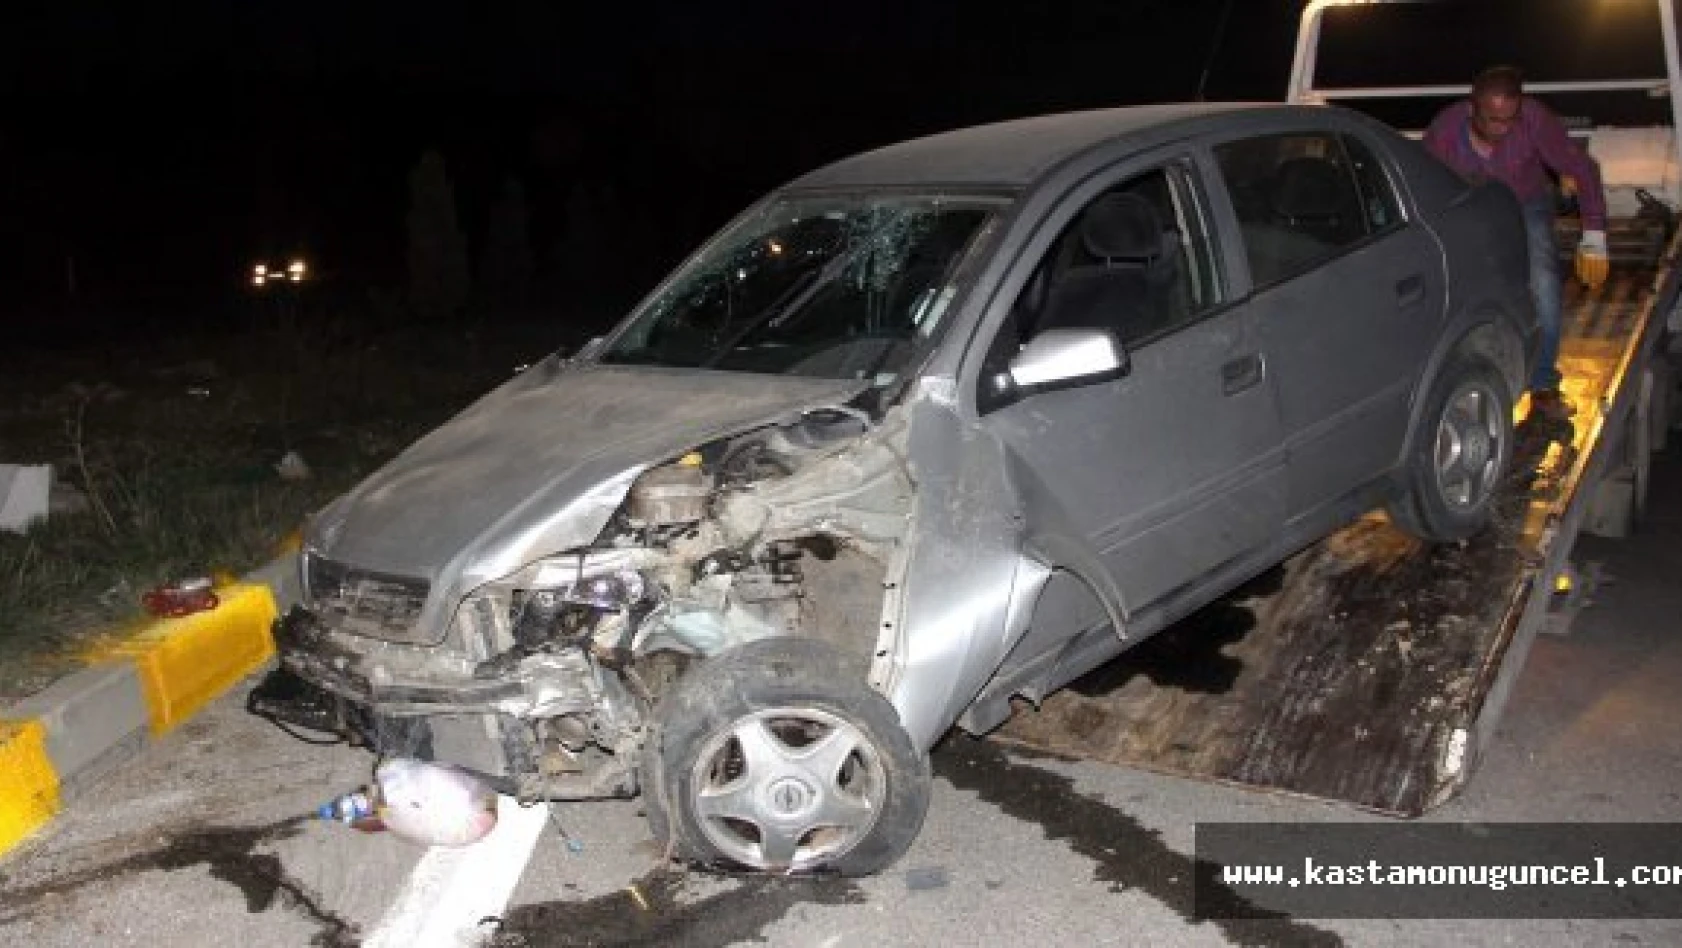 Kastamonu'da kavşakta iki otomobil çarpıştı: 5 yaralı